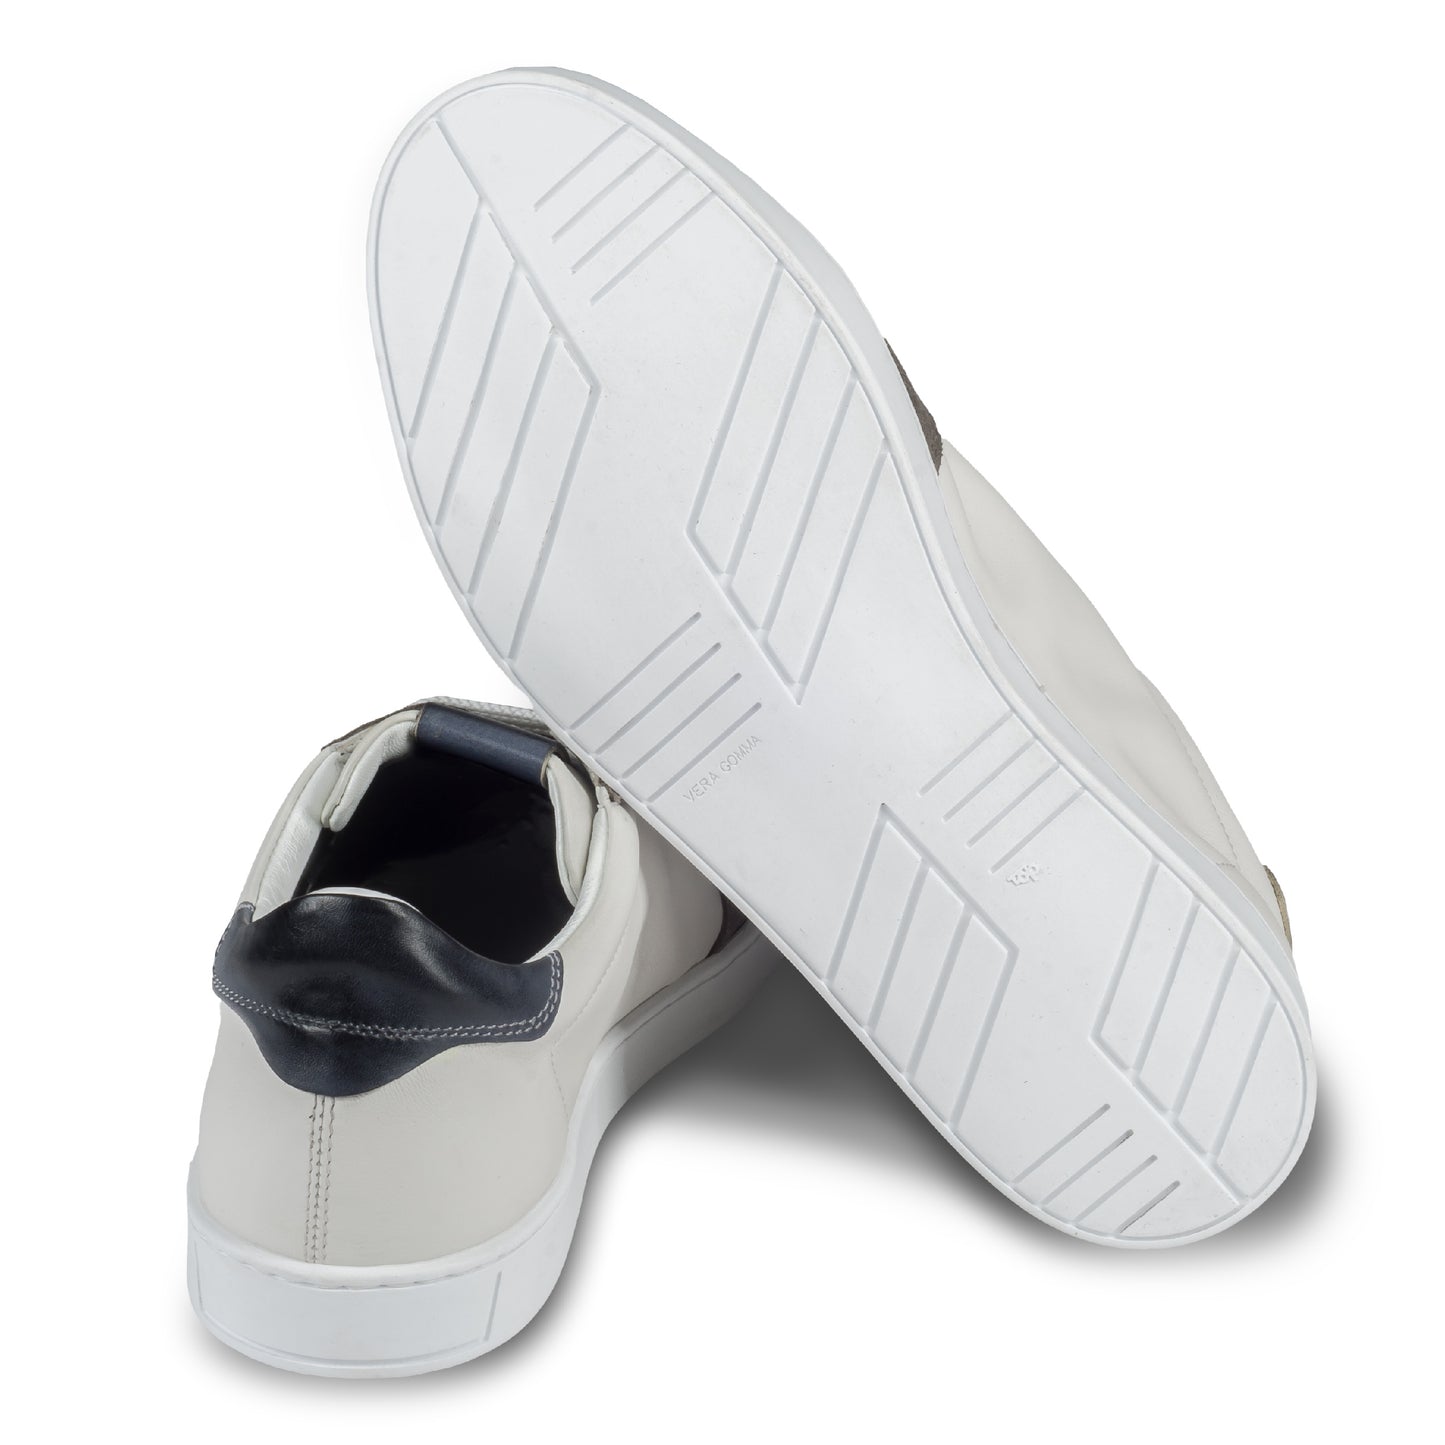 BRECOS –Herren Leder Sneaker in weiß, mit grauem Veloursleder an der Spitze und blauer Ferse, Durchgenäht. Ansicht der Ferse und Sohlenunterseite. Bei Sisento.